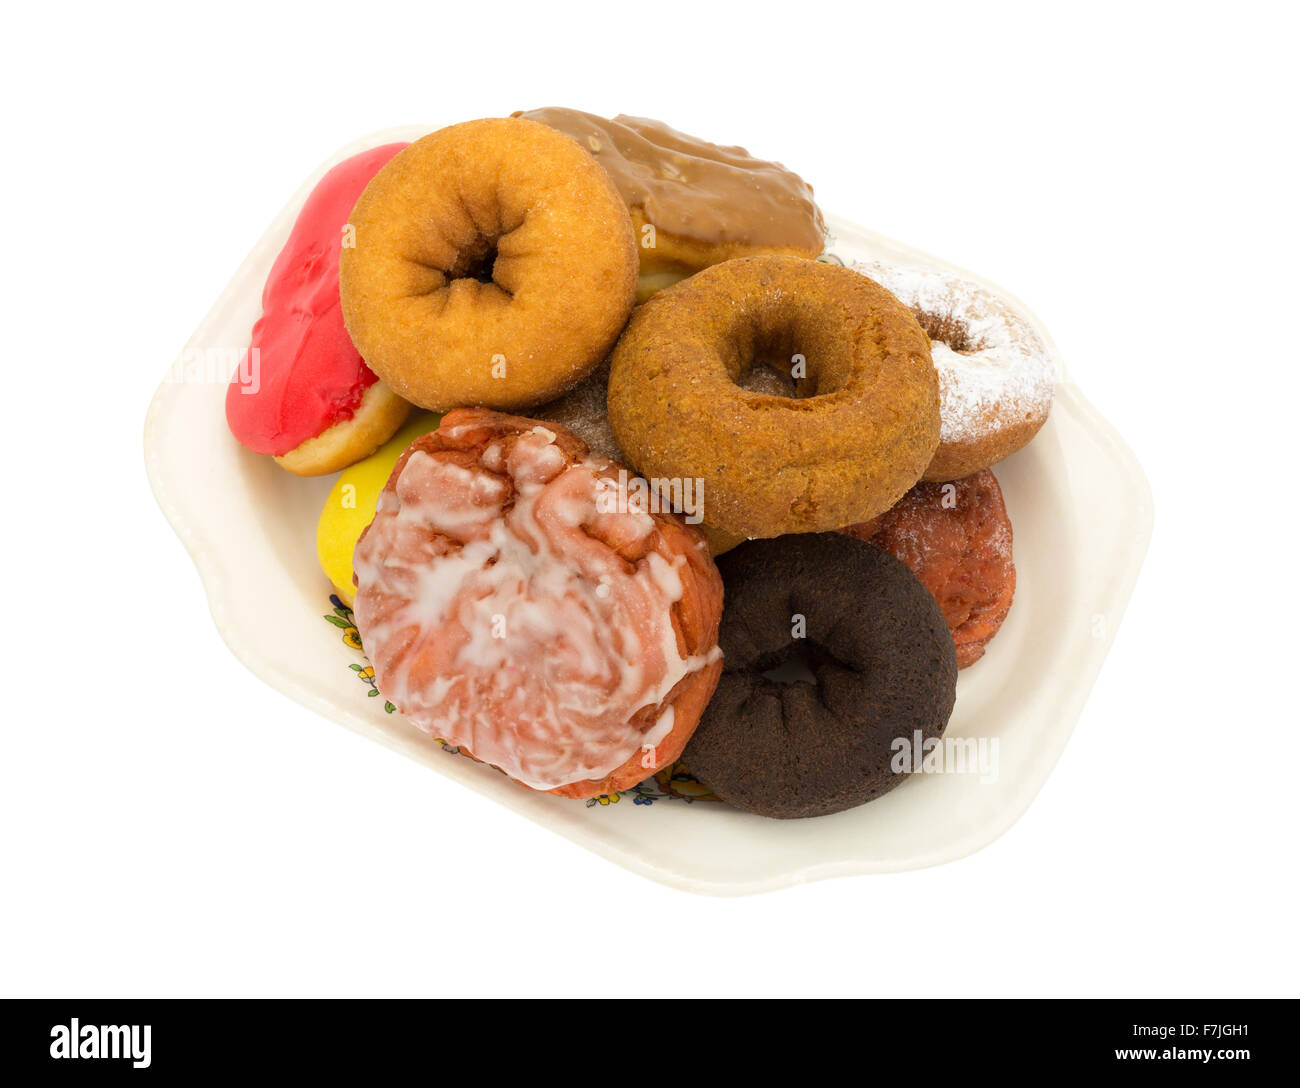 Eine alte Platte mit mehreren Donuts und ein Eistee Kirsche Krapfen isoliert auf einem weißen Hintergrund. Stockfoto